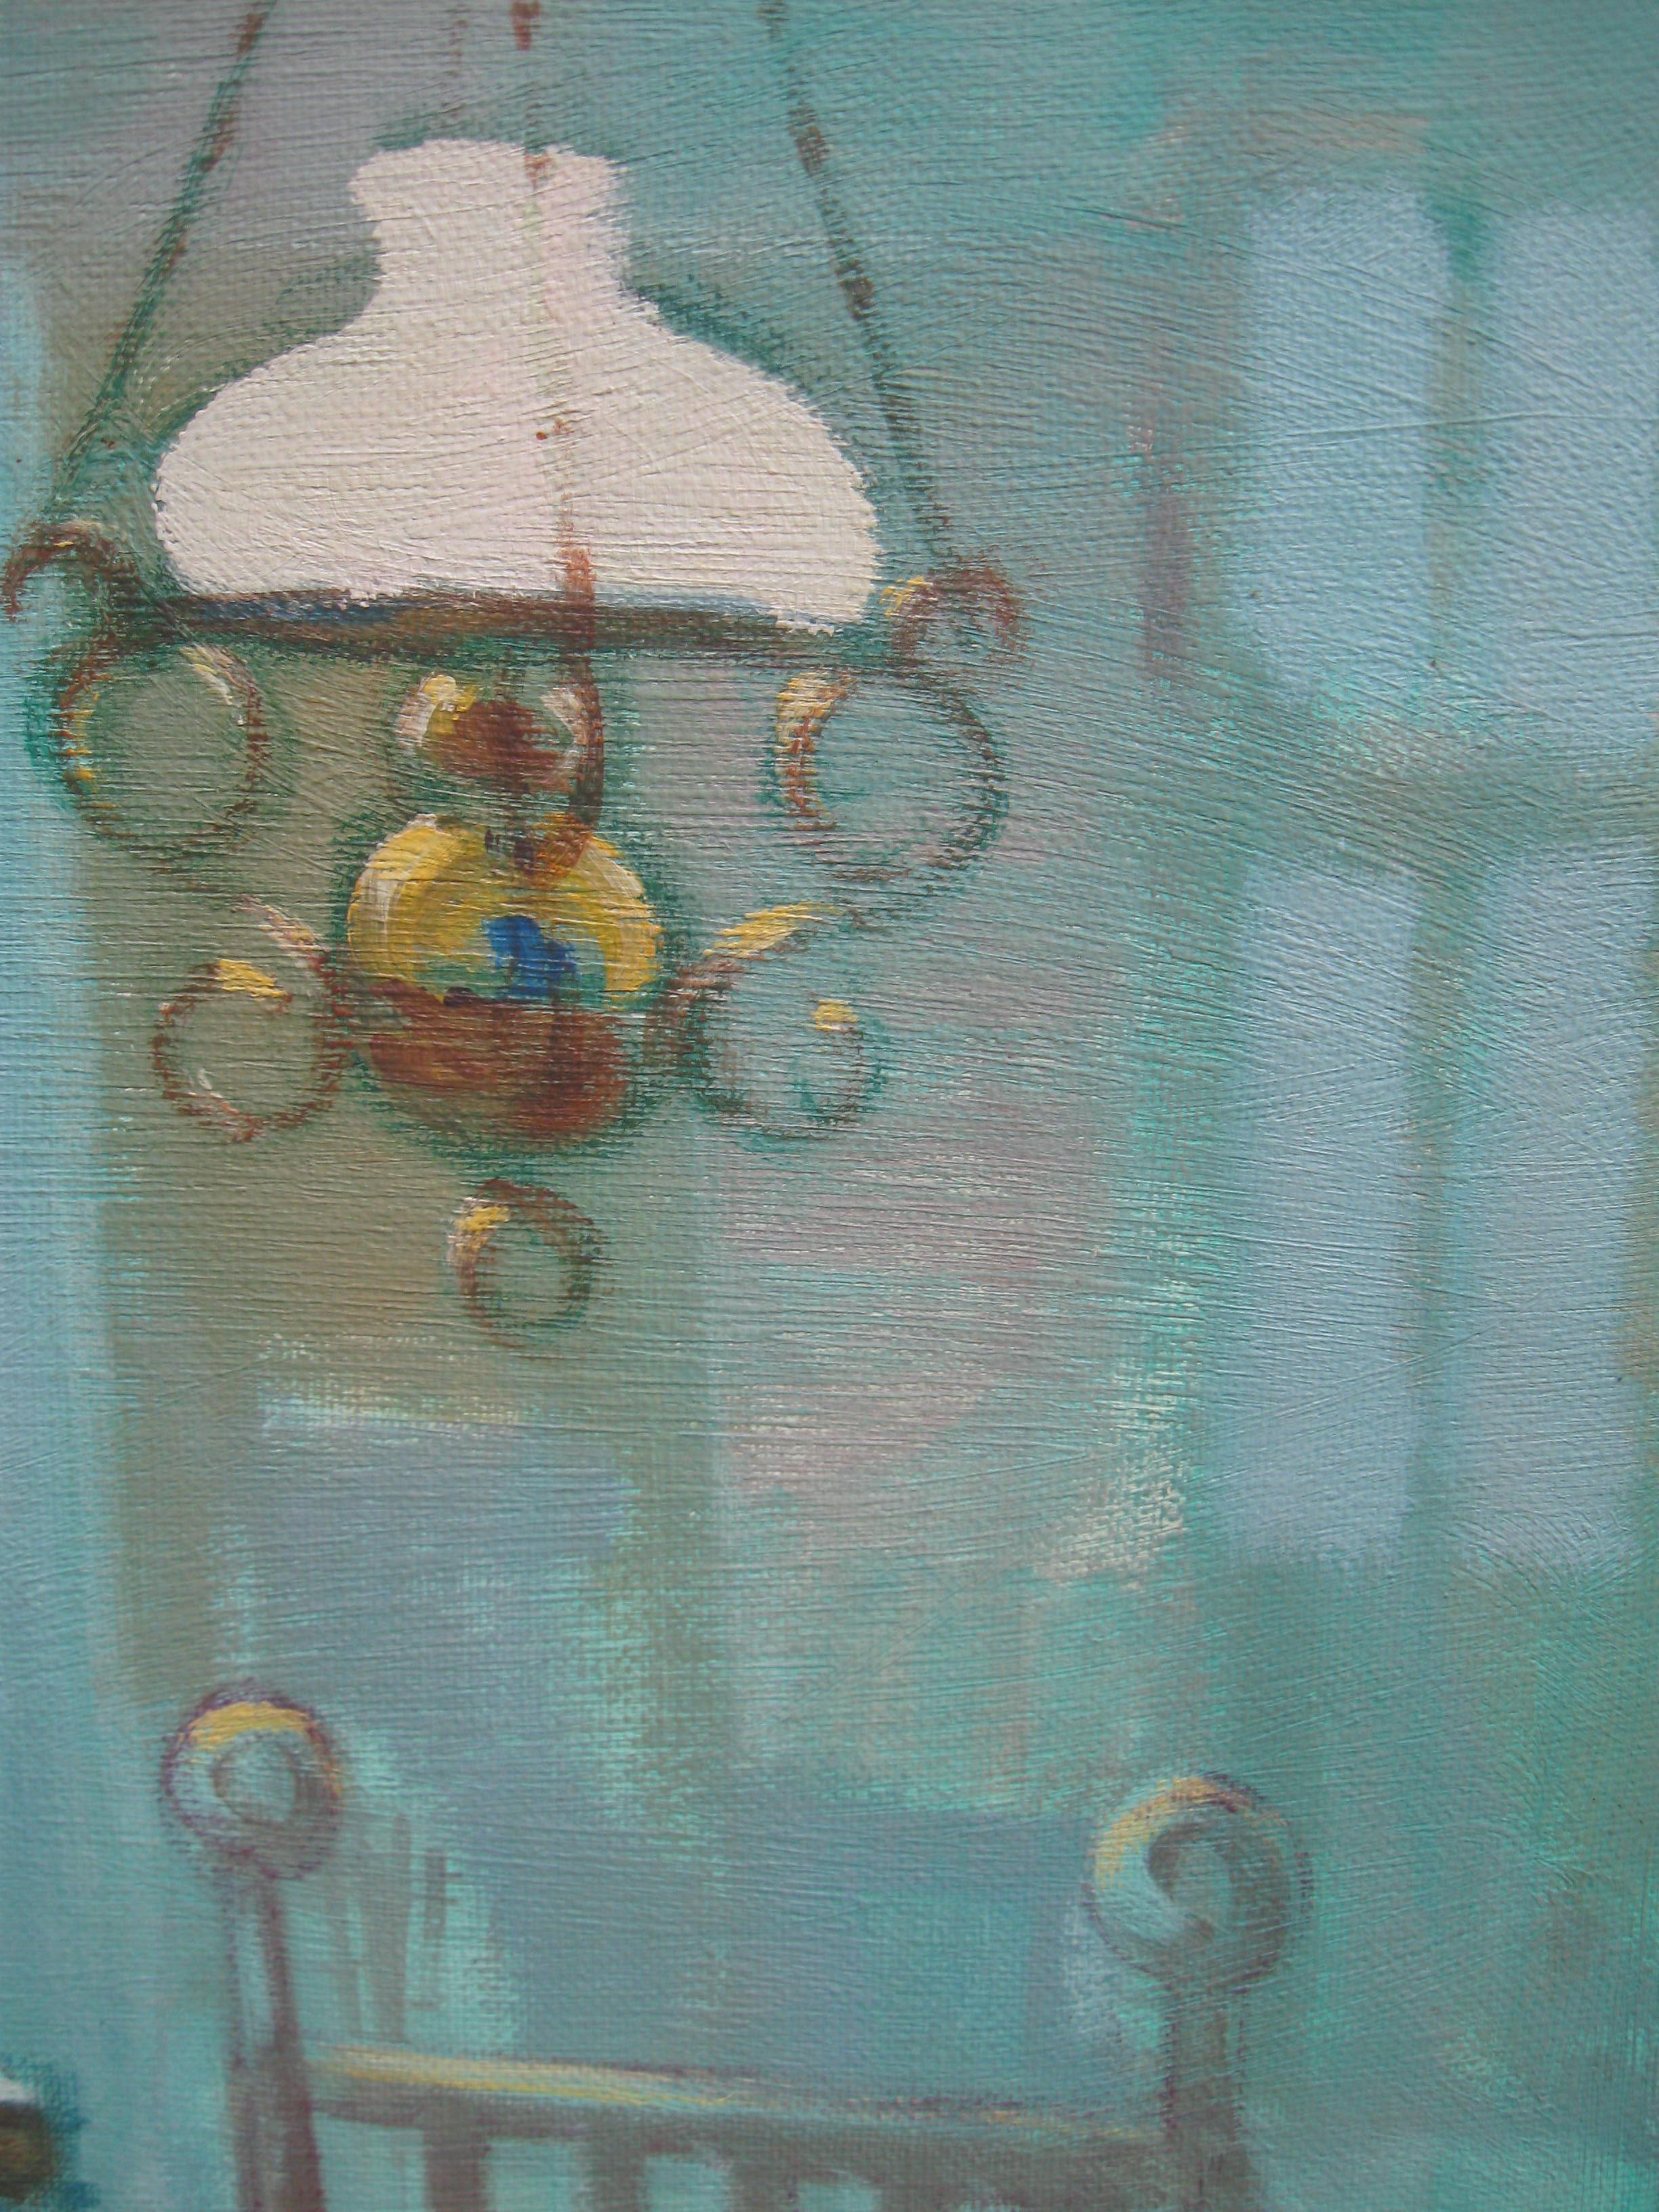 Une huile post-impressionniste du milieu du 20e siècle représentant une jeune femme cousant à la lumière d'une lampe, vers 1960.
huile sur toile 46cmx 70cm
bon cadre galerie 63cmx 88cm
Effet de lumière très atmosphérique peint dans une palette de